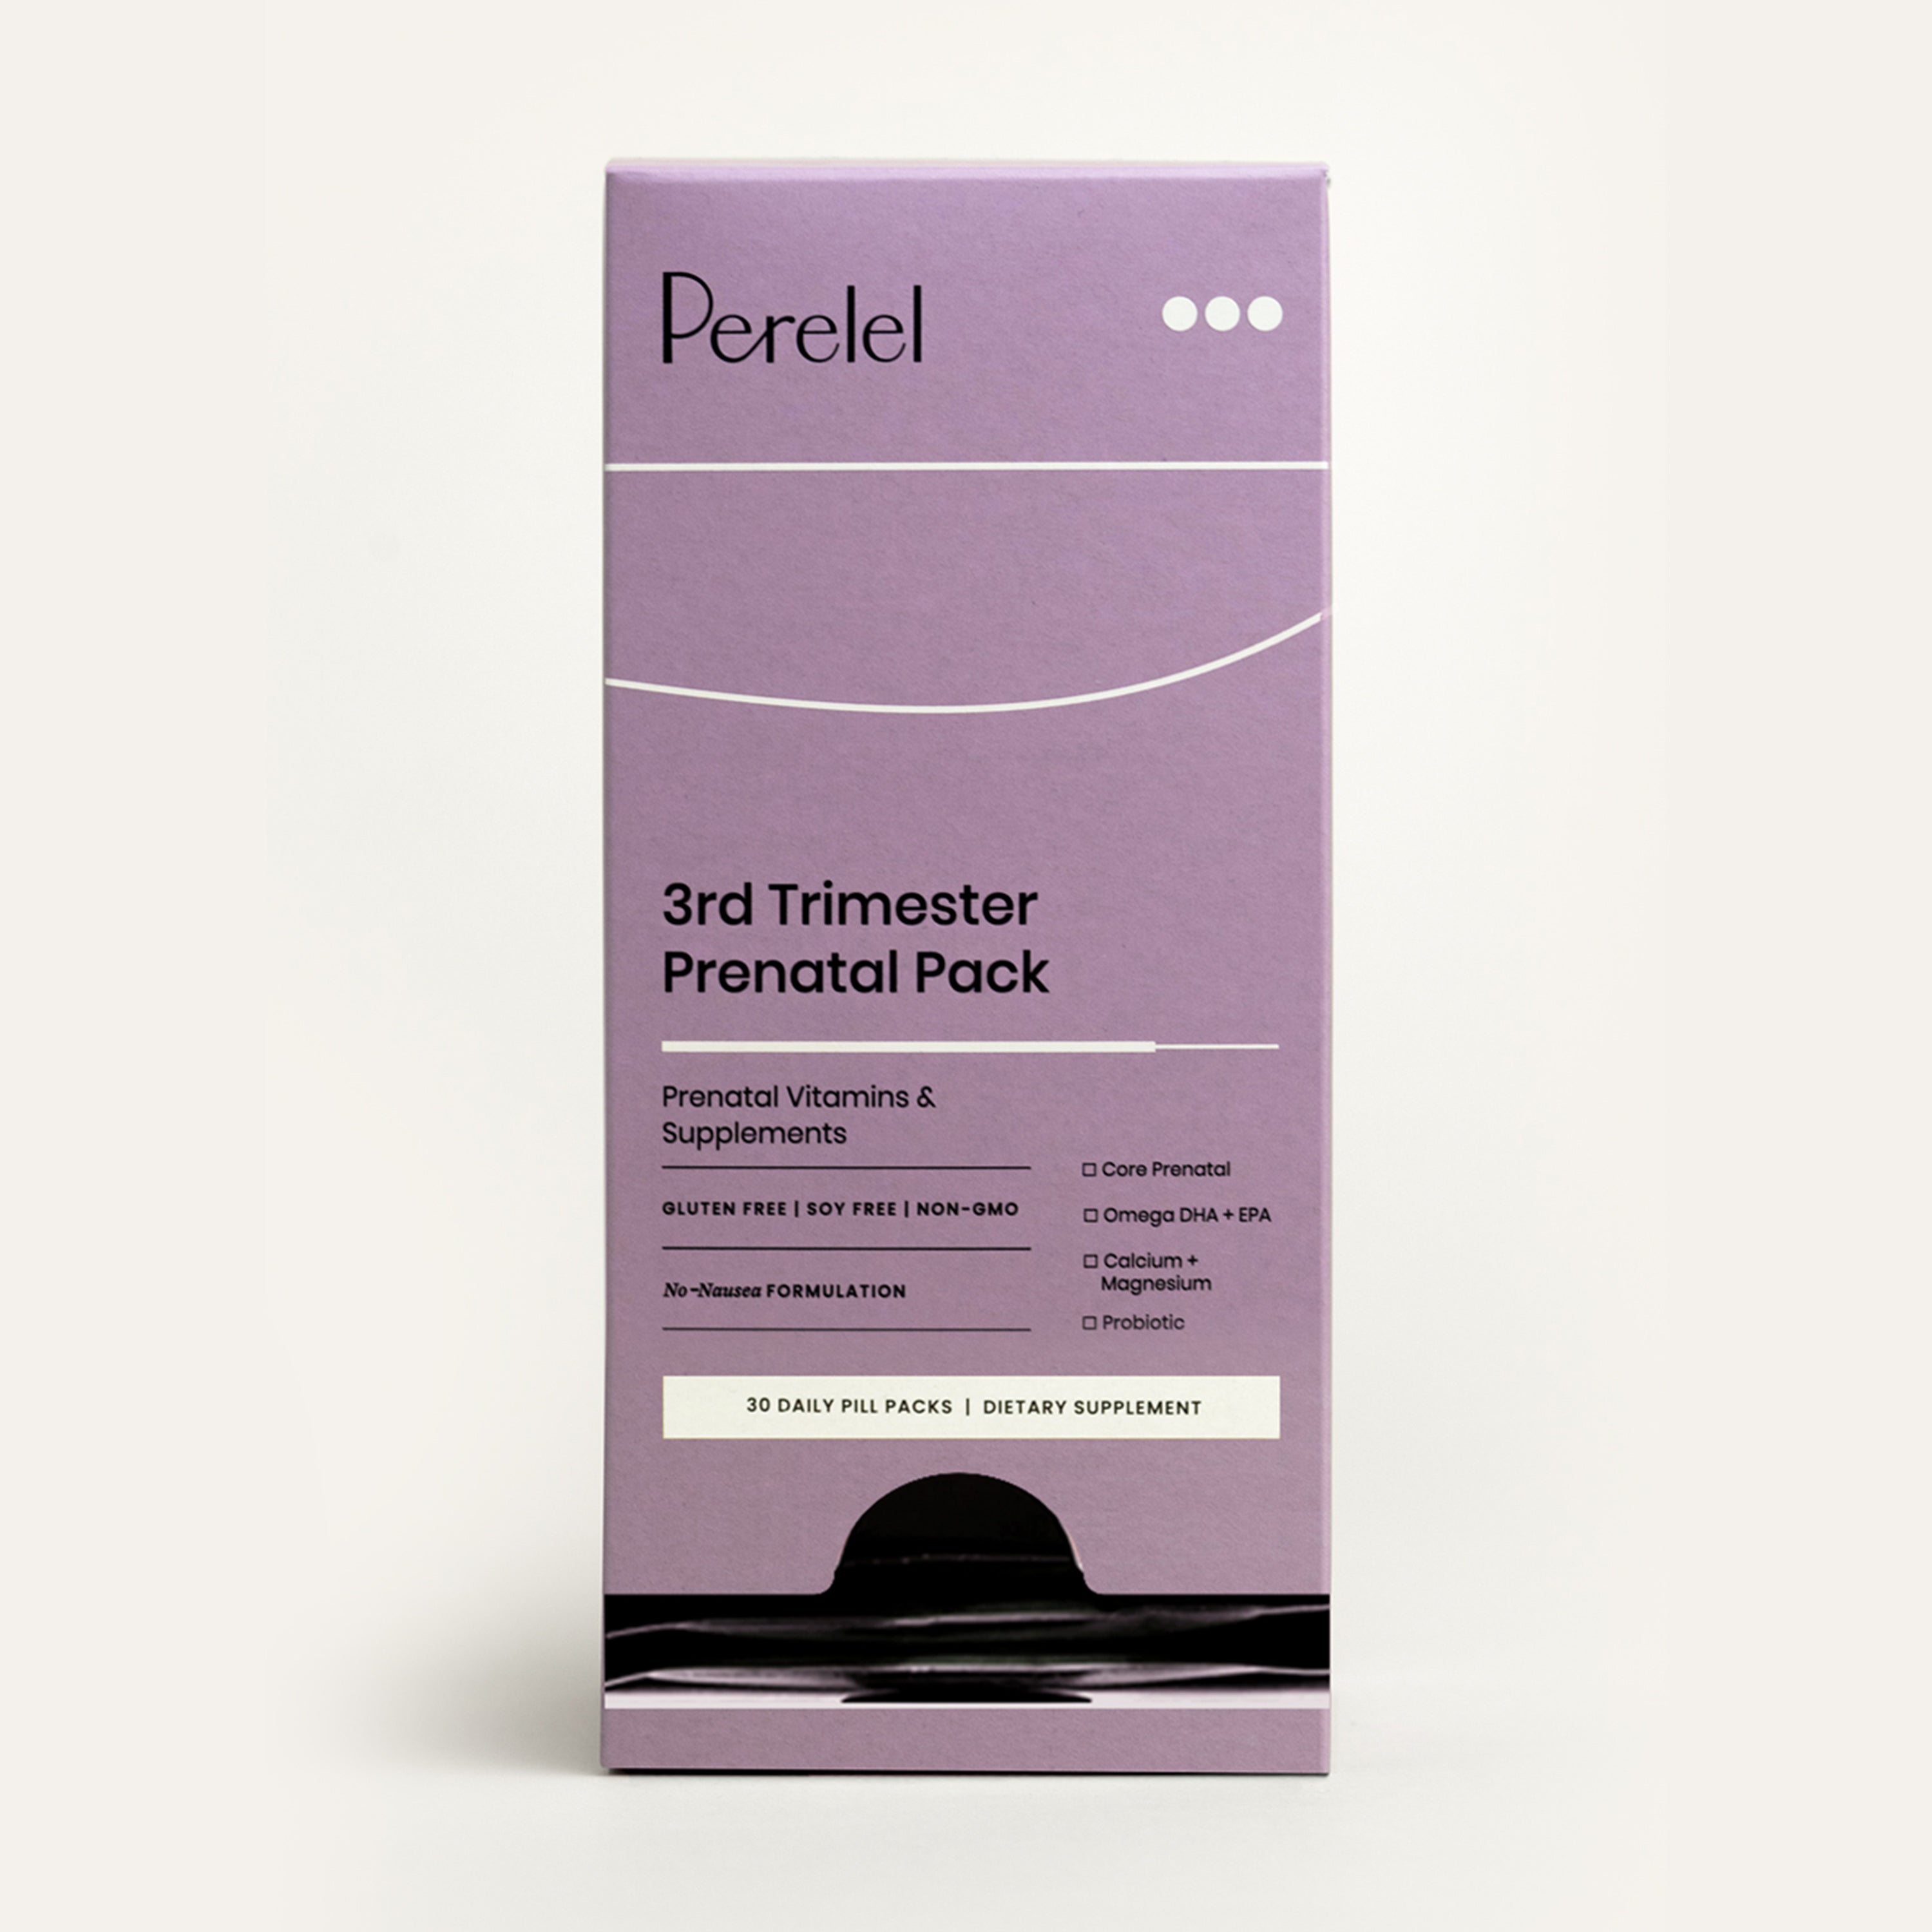 Third Trimester Prenatal Vitamin Pack – Perelel